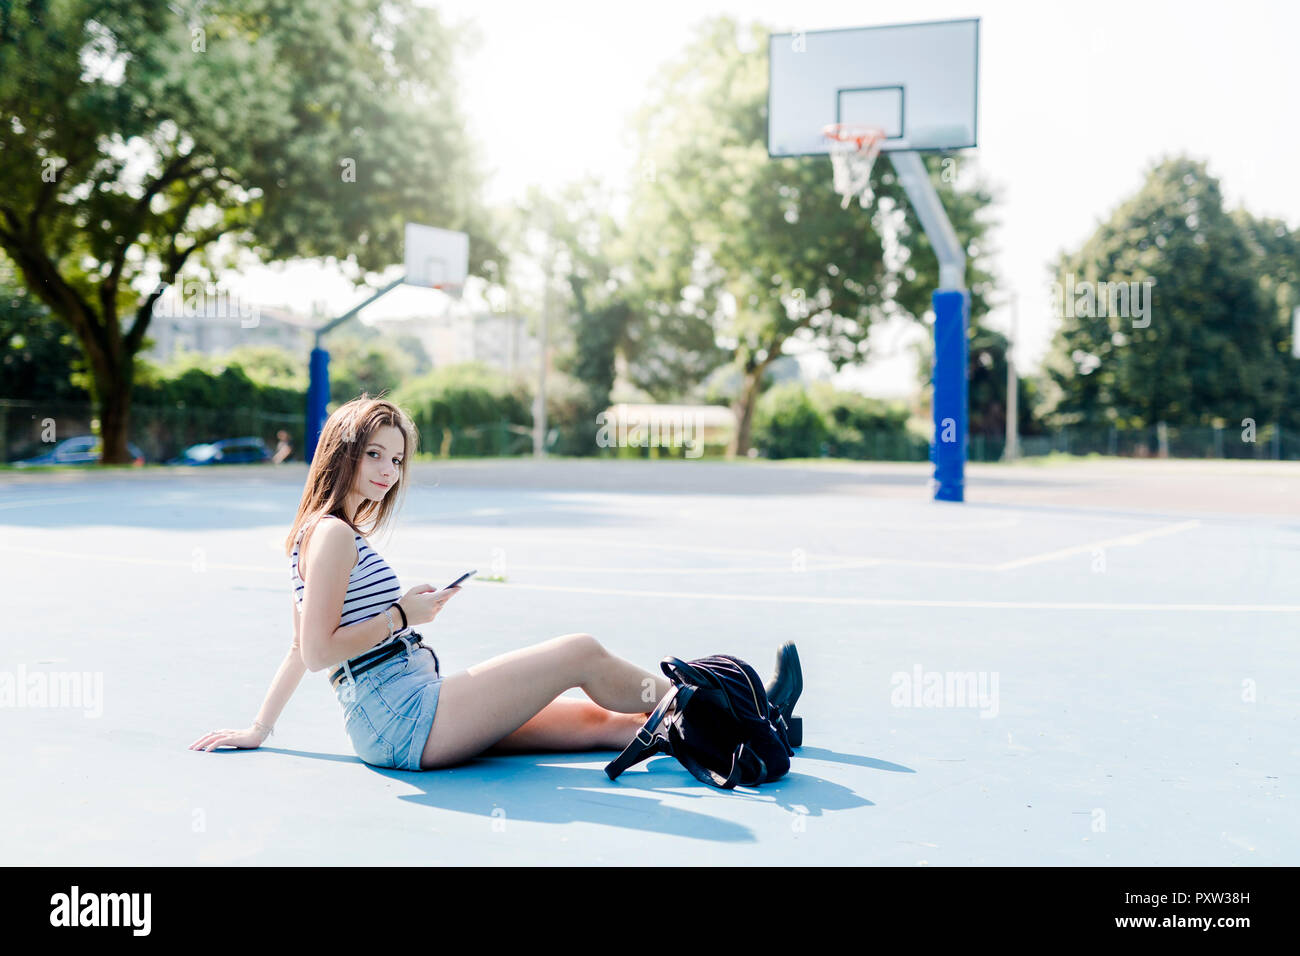 Portrait de jeune femme avec sac à dos, assis sur un terrain de sport avec cell phone Banque D'Images